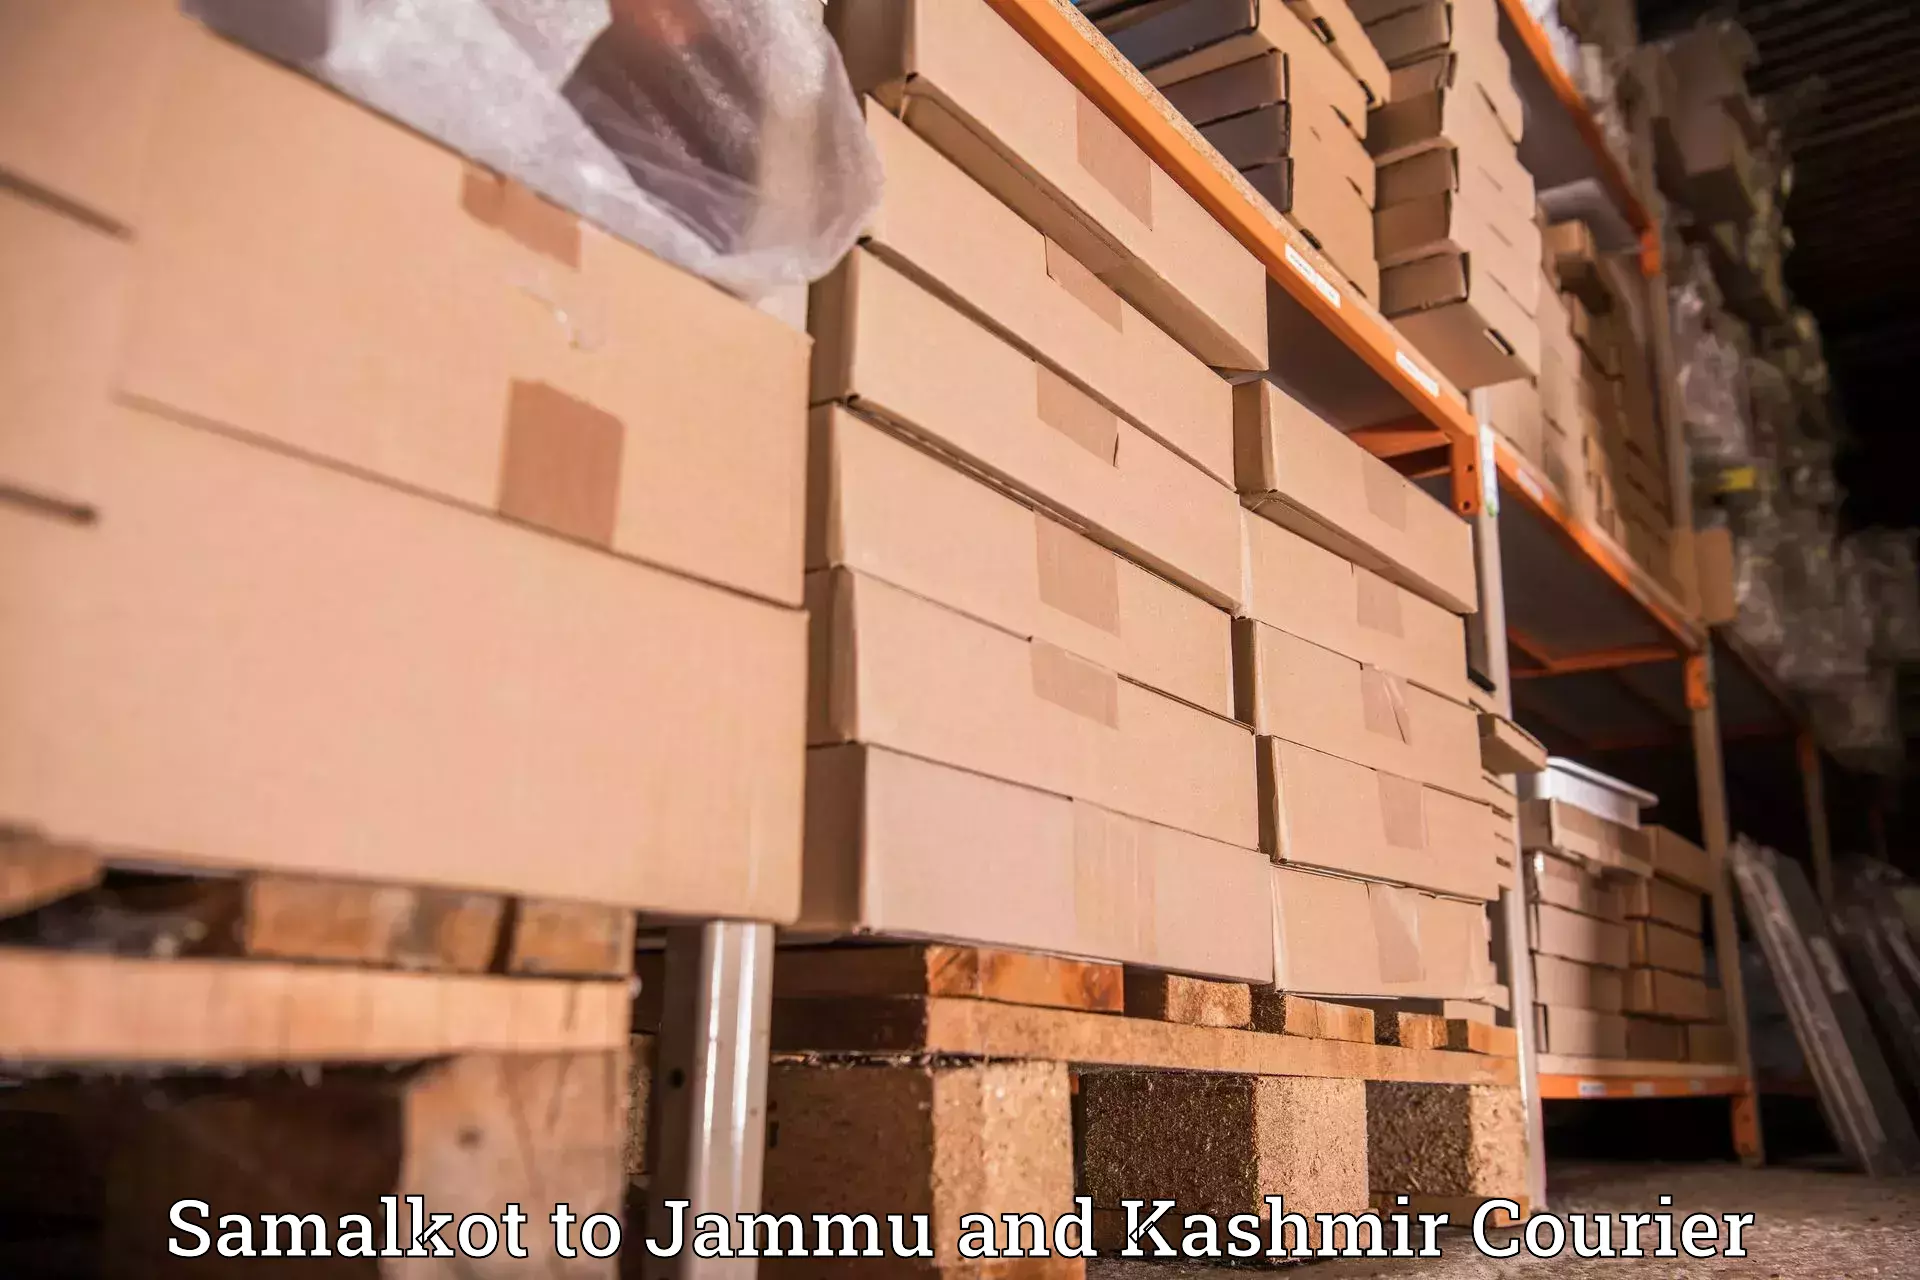 High value parcel delivery in Samalkot to University of Kashmir Srinagar